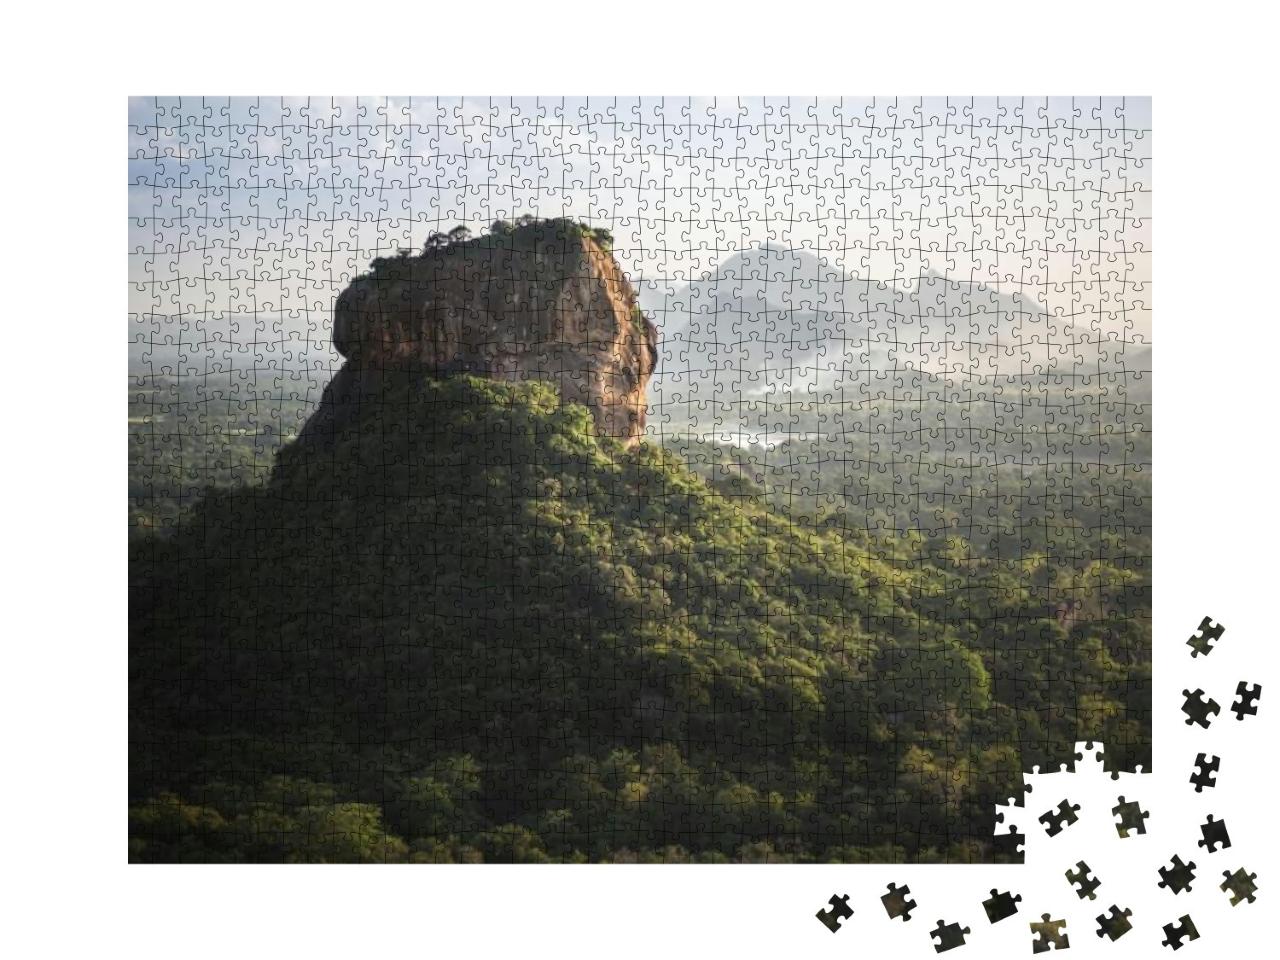 Puzzle 1000 Teile „Die atemberaubende Löwenfelsenfestung Sigiriya in Sri Lanka“